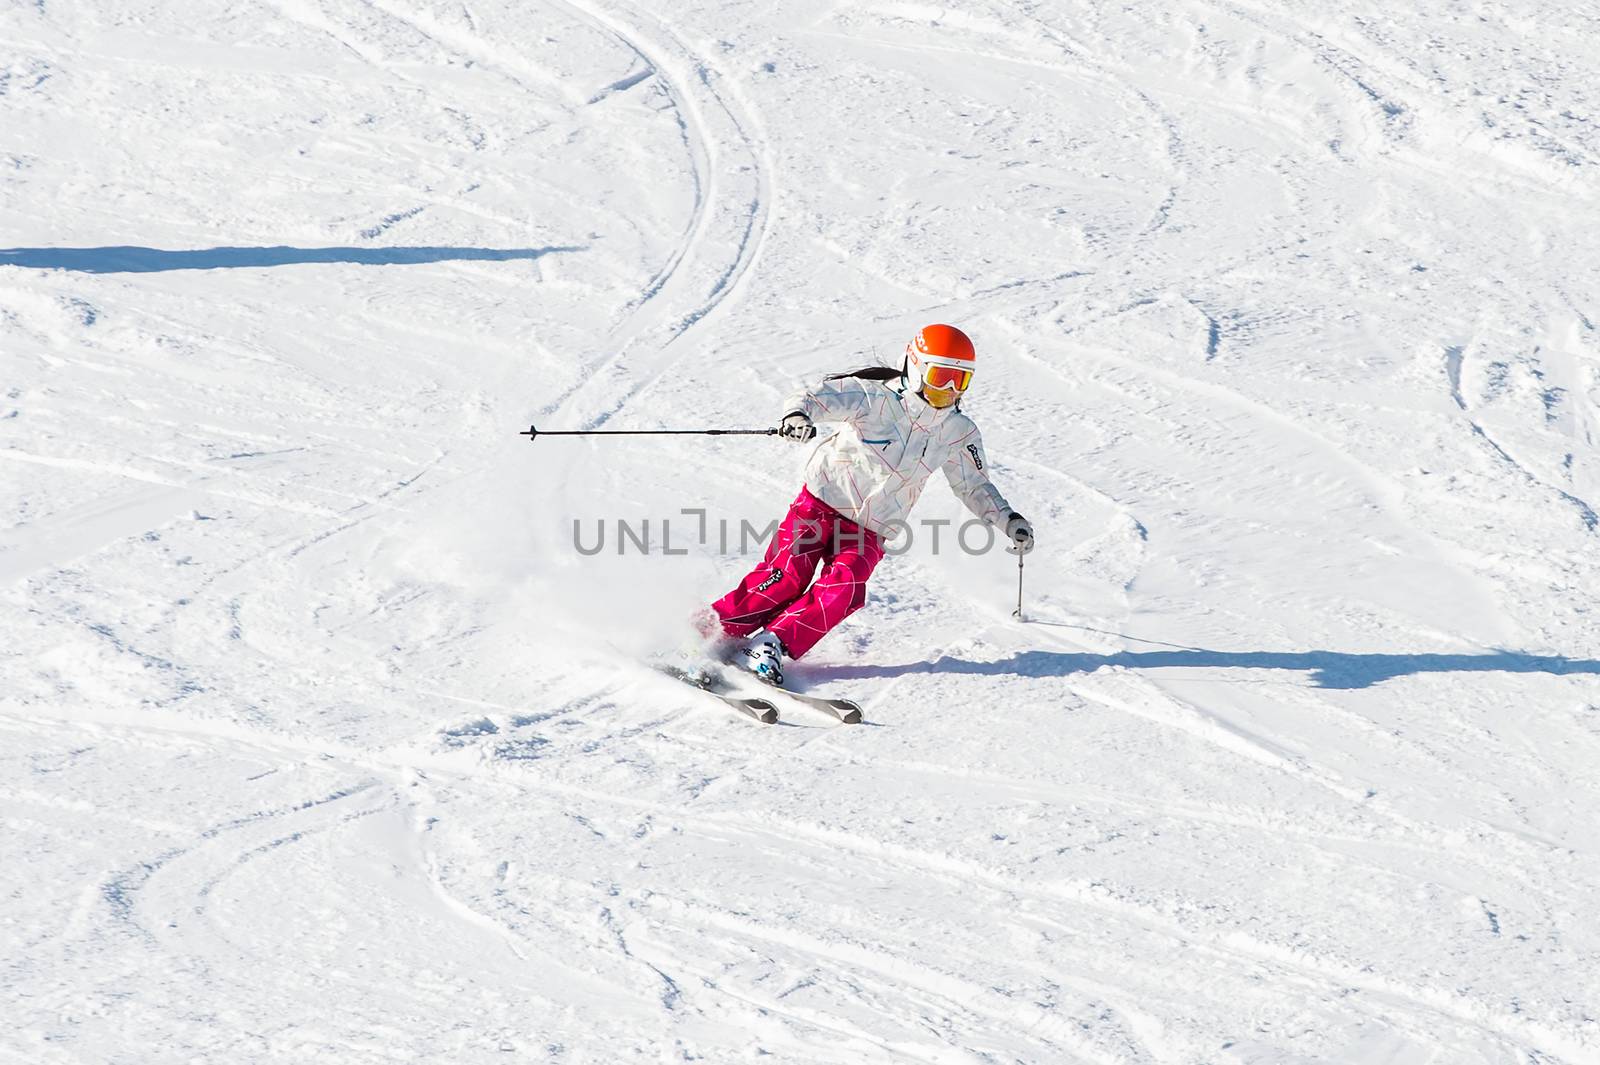 DEOGYUSAN,KOREA - JANUARY 1: Skier skiing on Deogyusan Ski Resort in winter,South Korea on January 1, 2016.